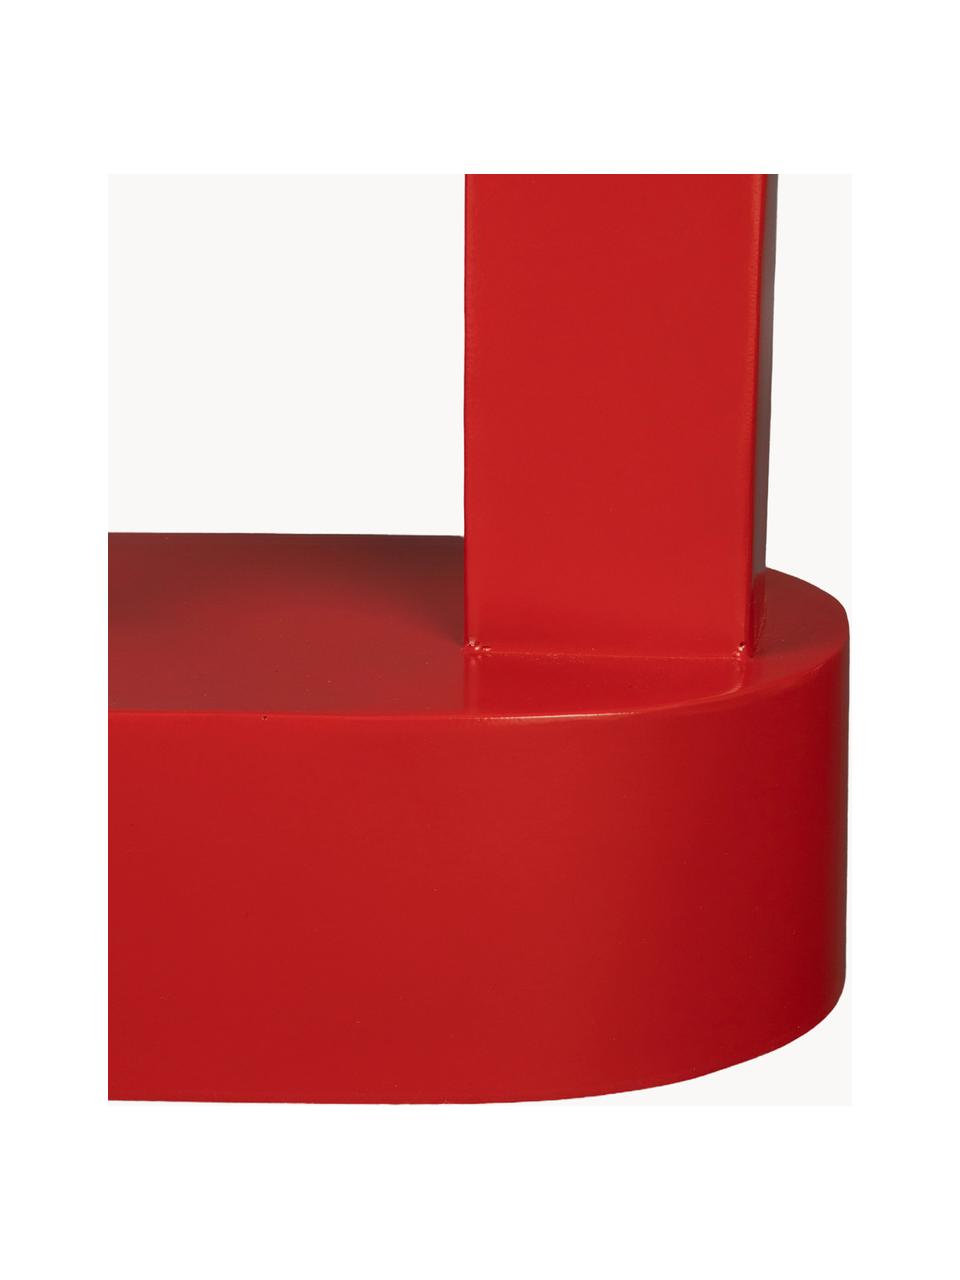 Mesa auxiliar ovalada de metal Magenta, Metal recubierto, Rojo, An 36 x Al 47 cm